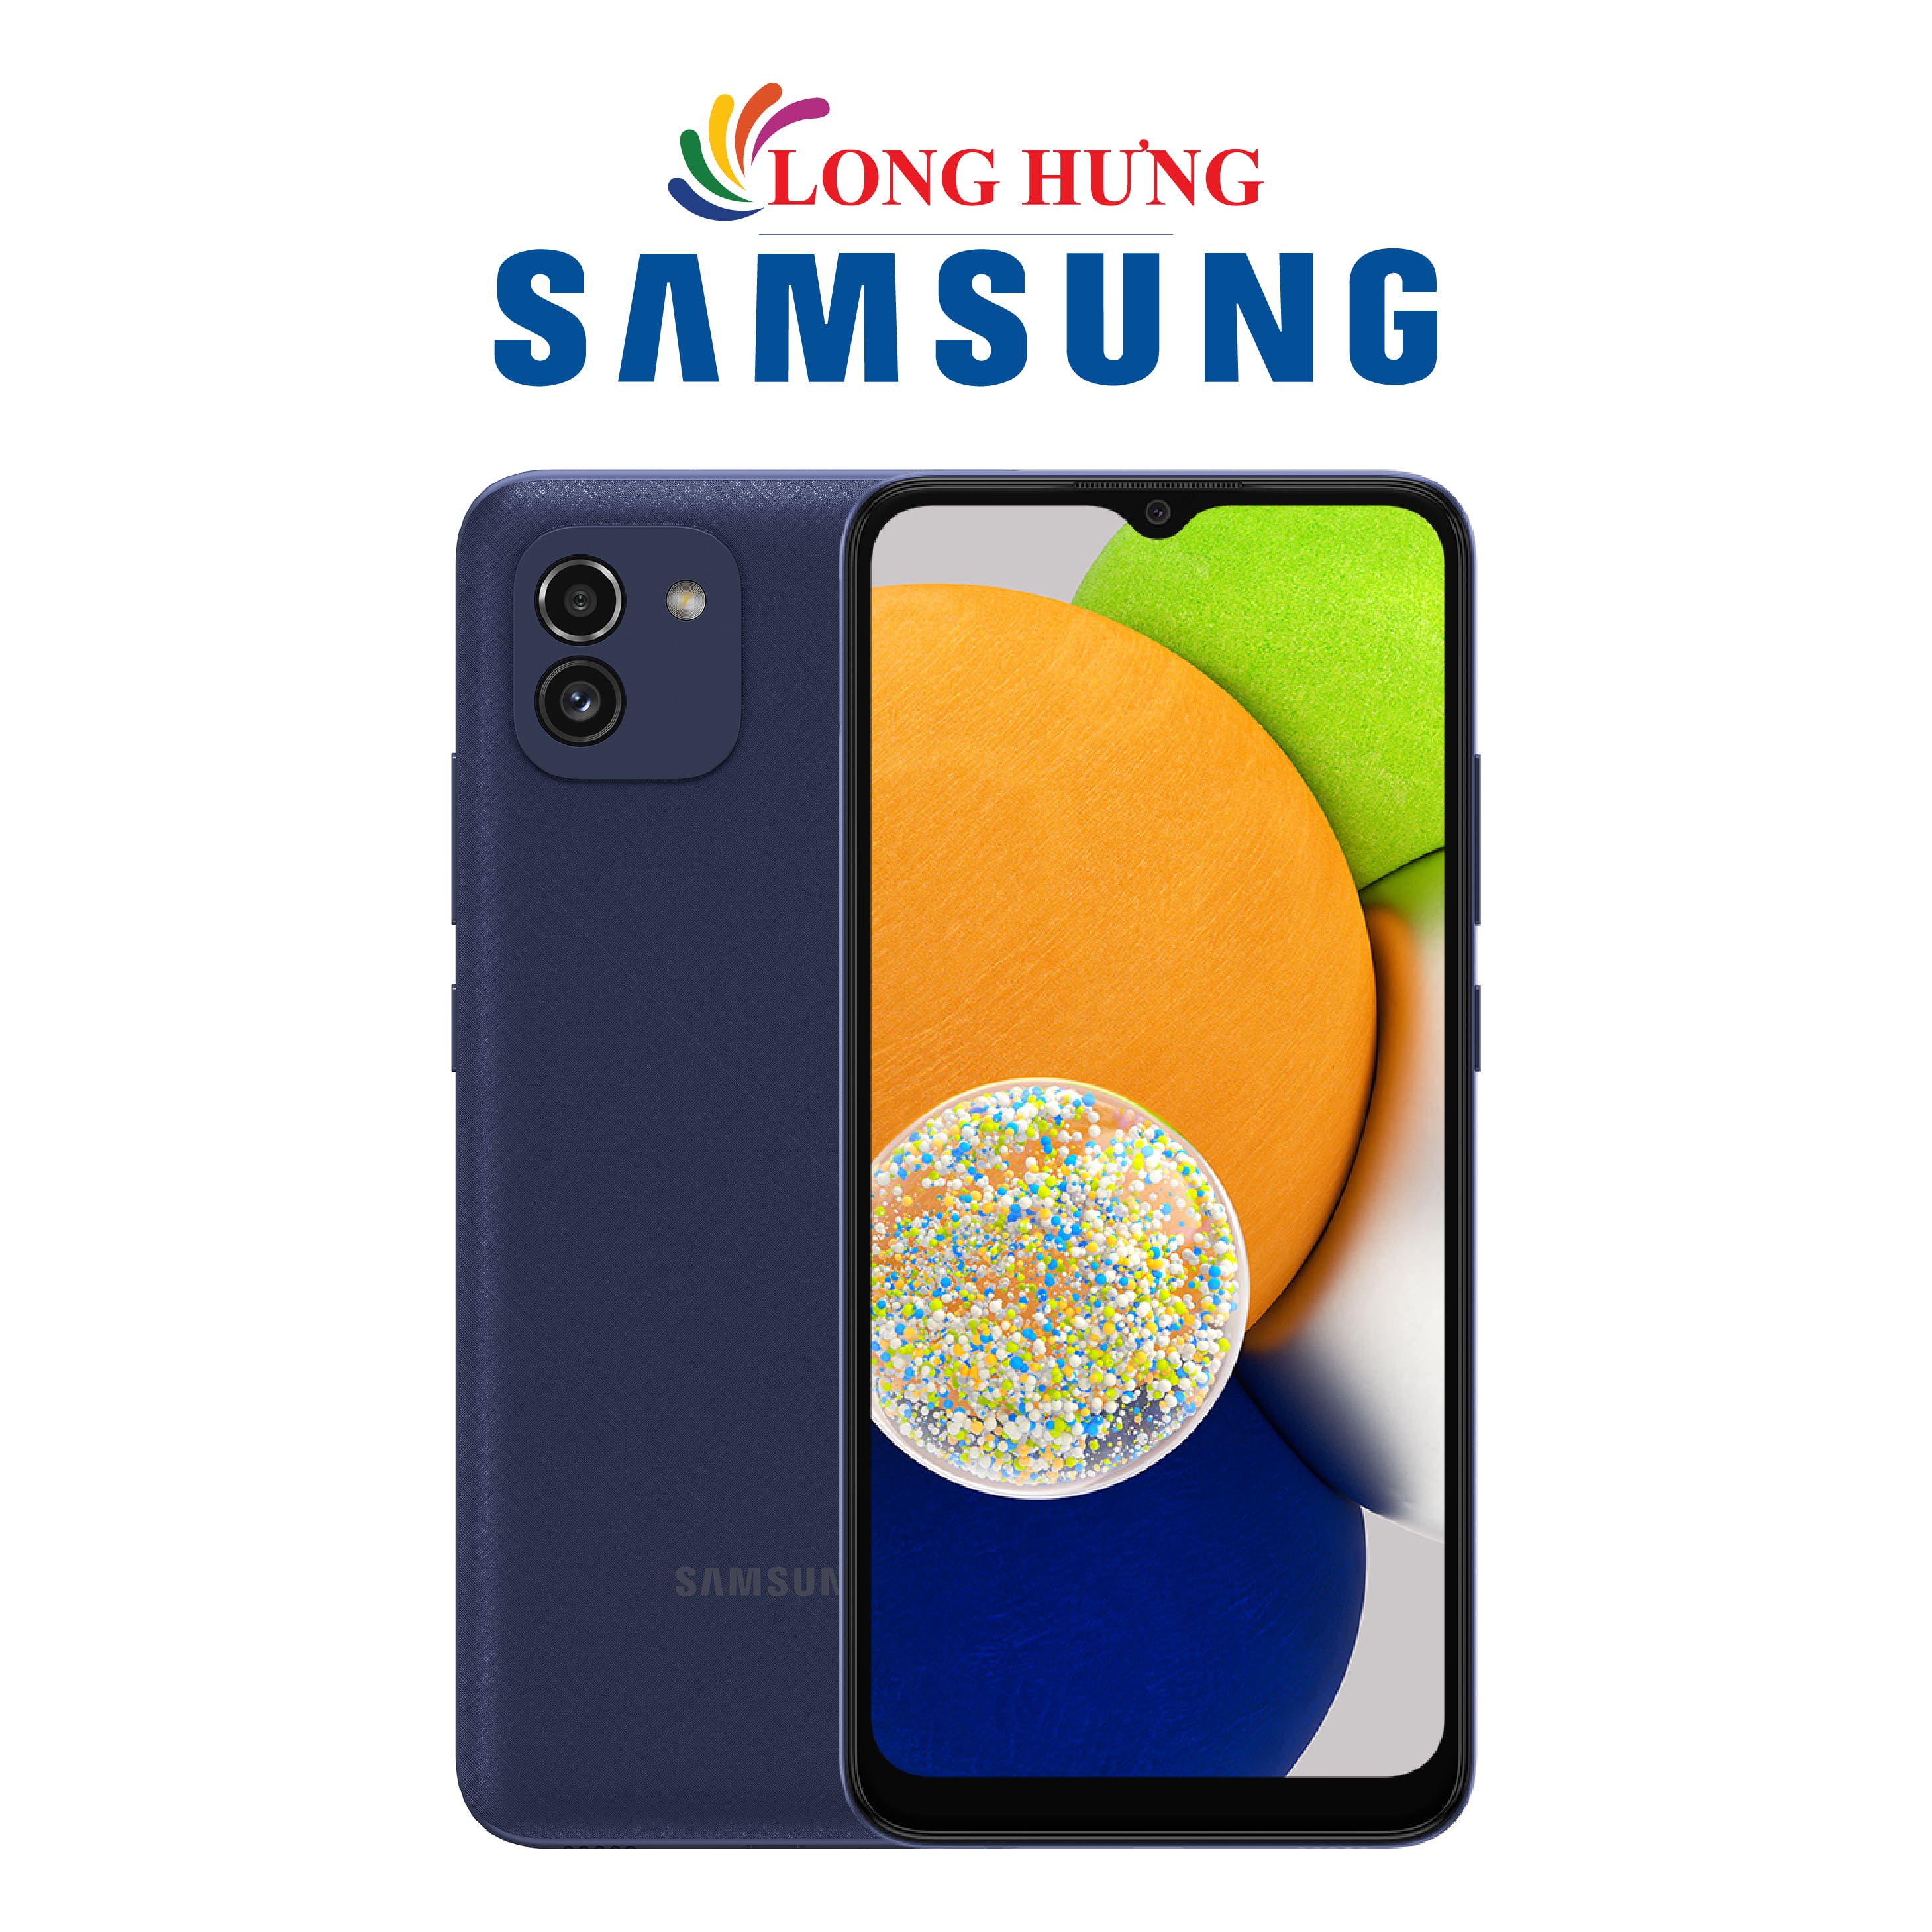 Điện thoại Samsung Galaxy A03 (3GB/32GB) - Hàng chính hãng - Màn hình LCD sắc nét, dung lượng pin lớn, camera lên đến 48 MP